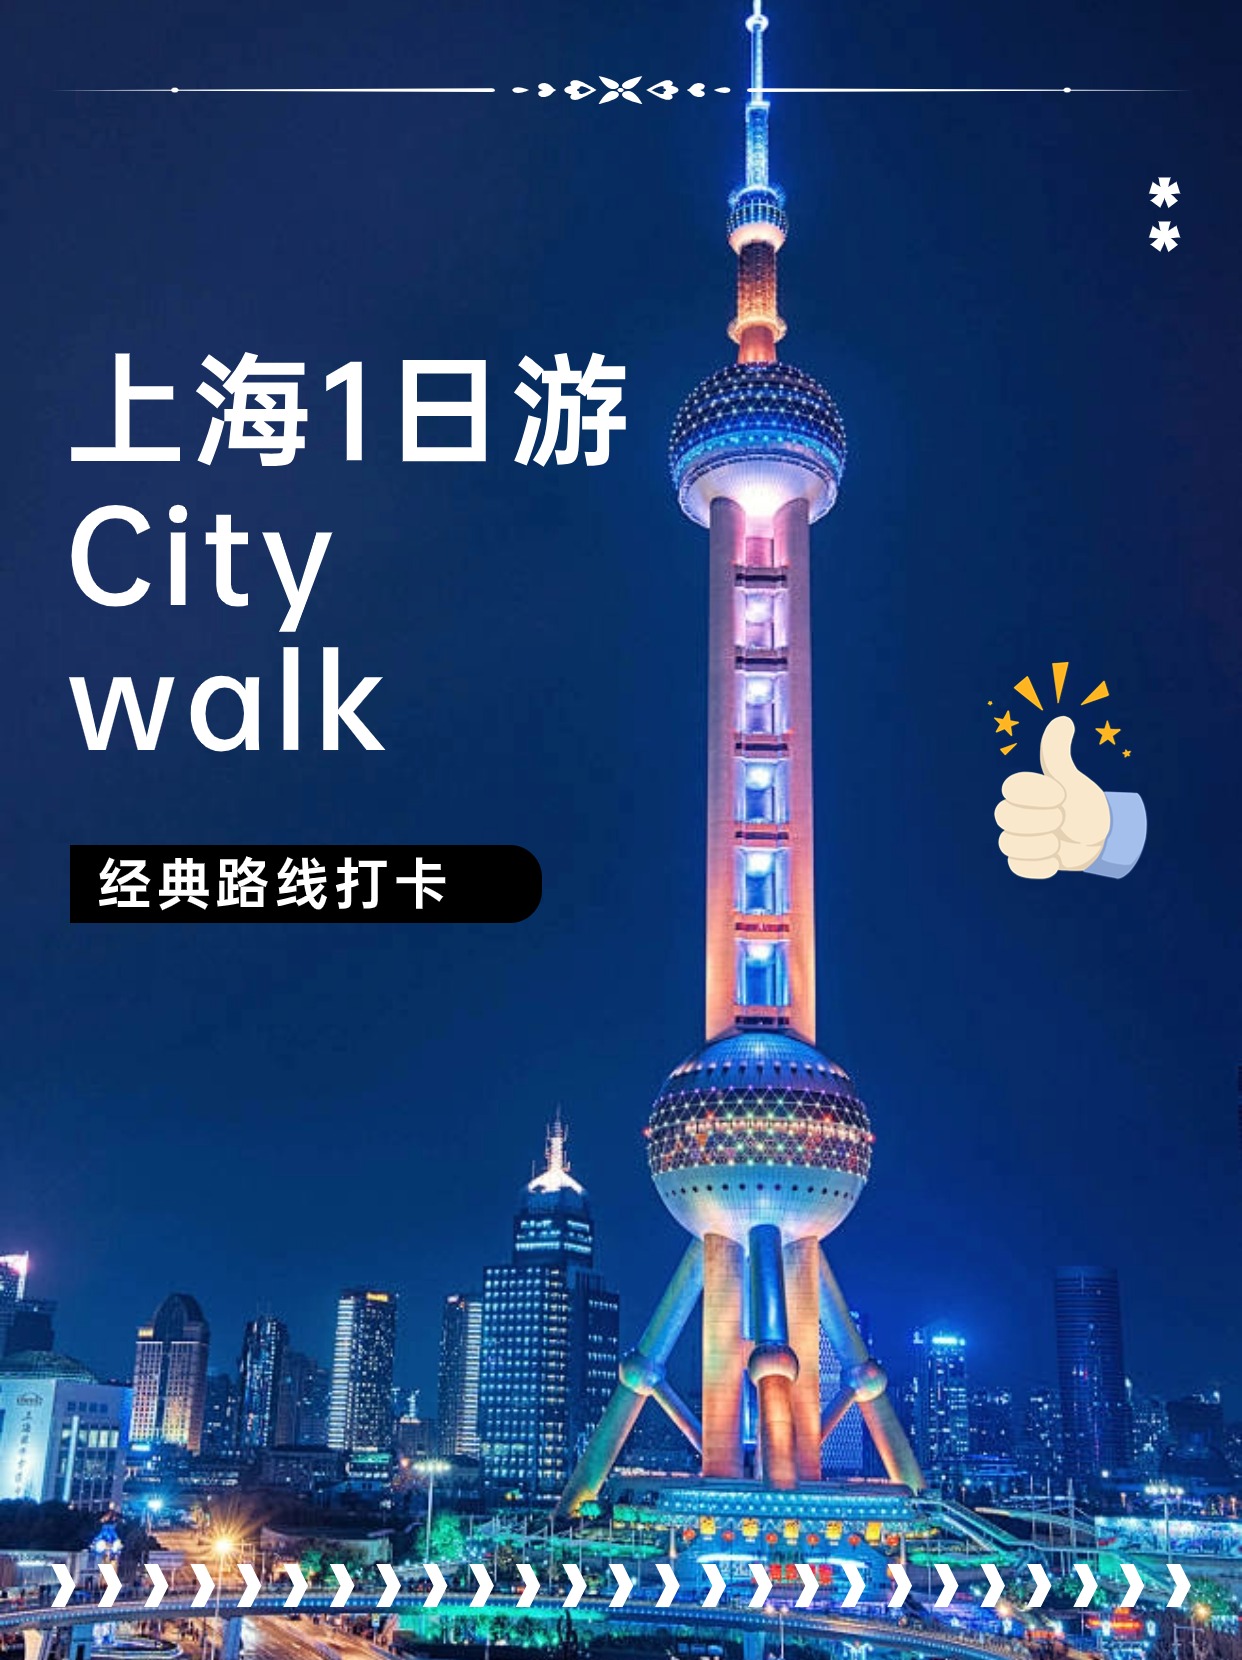 上海 CityWalk 一日打卡经典路线，收藏好了!